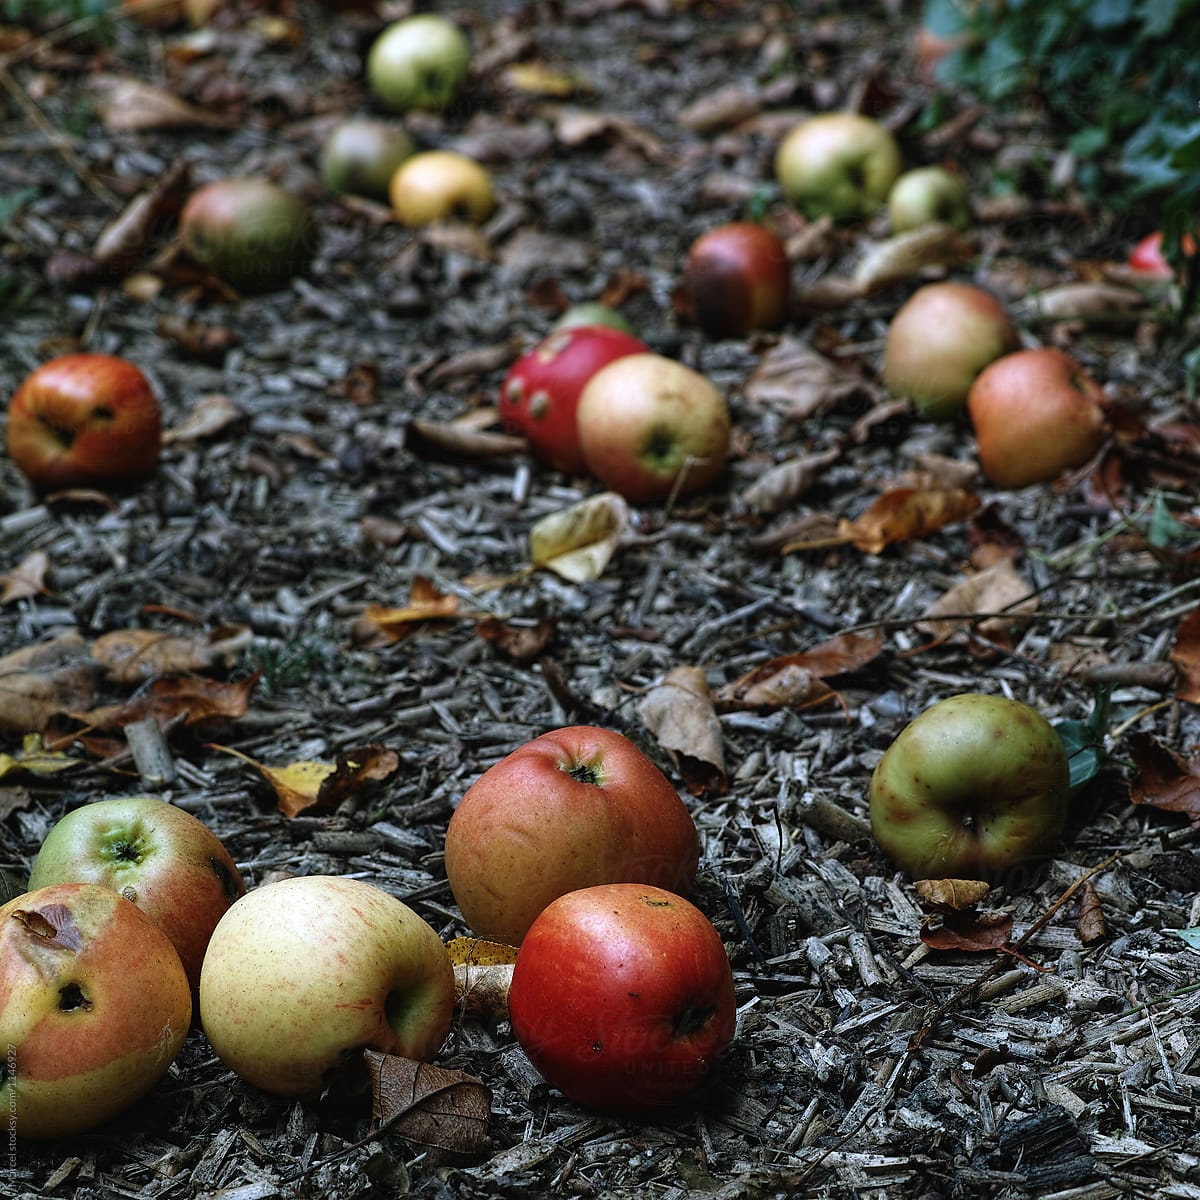 Fallen apples on a garden path